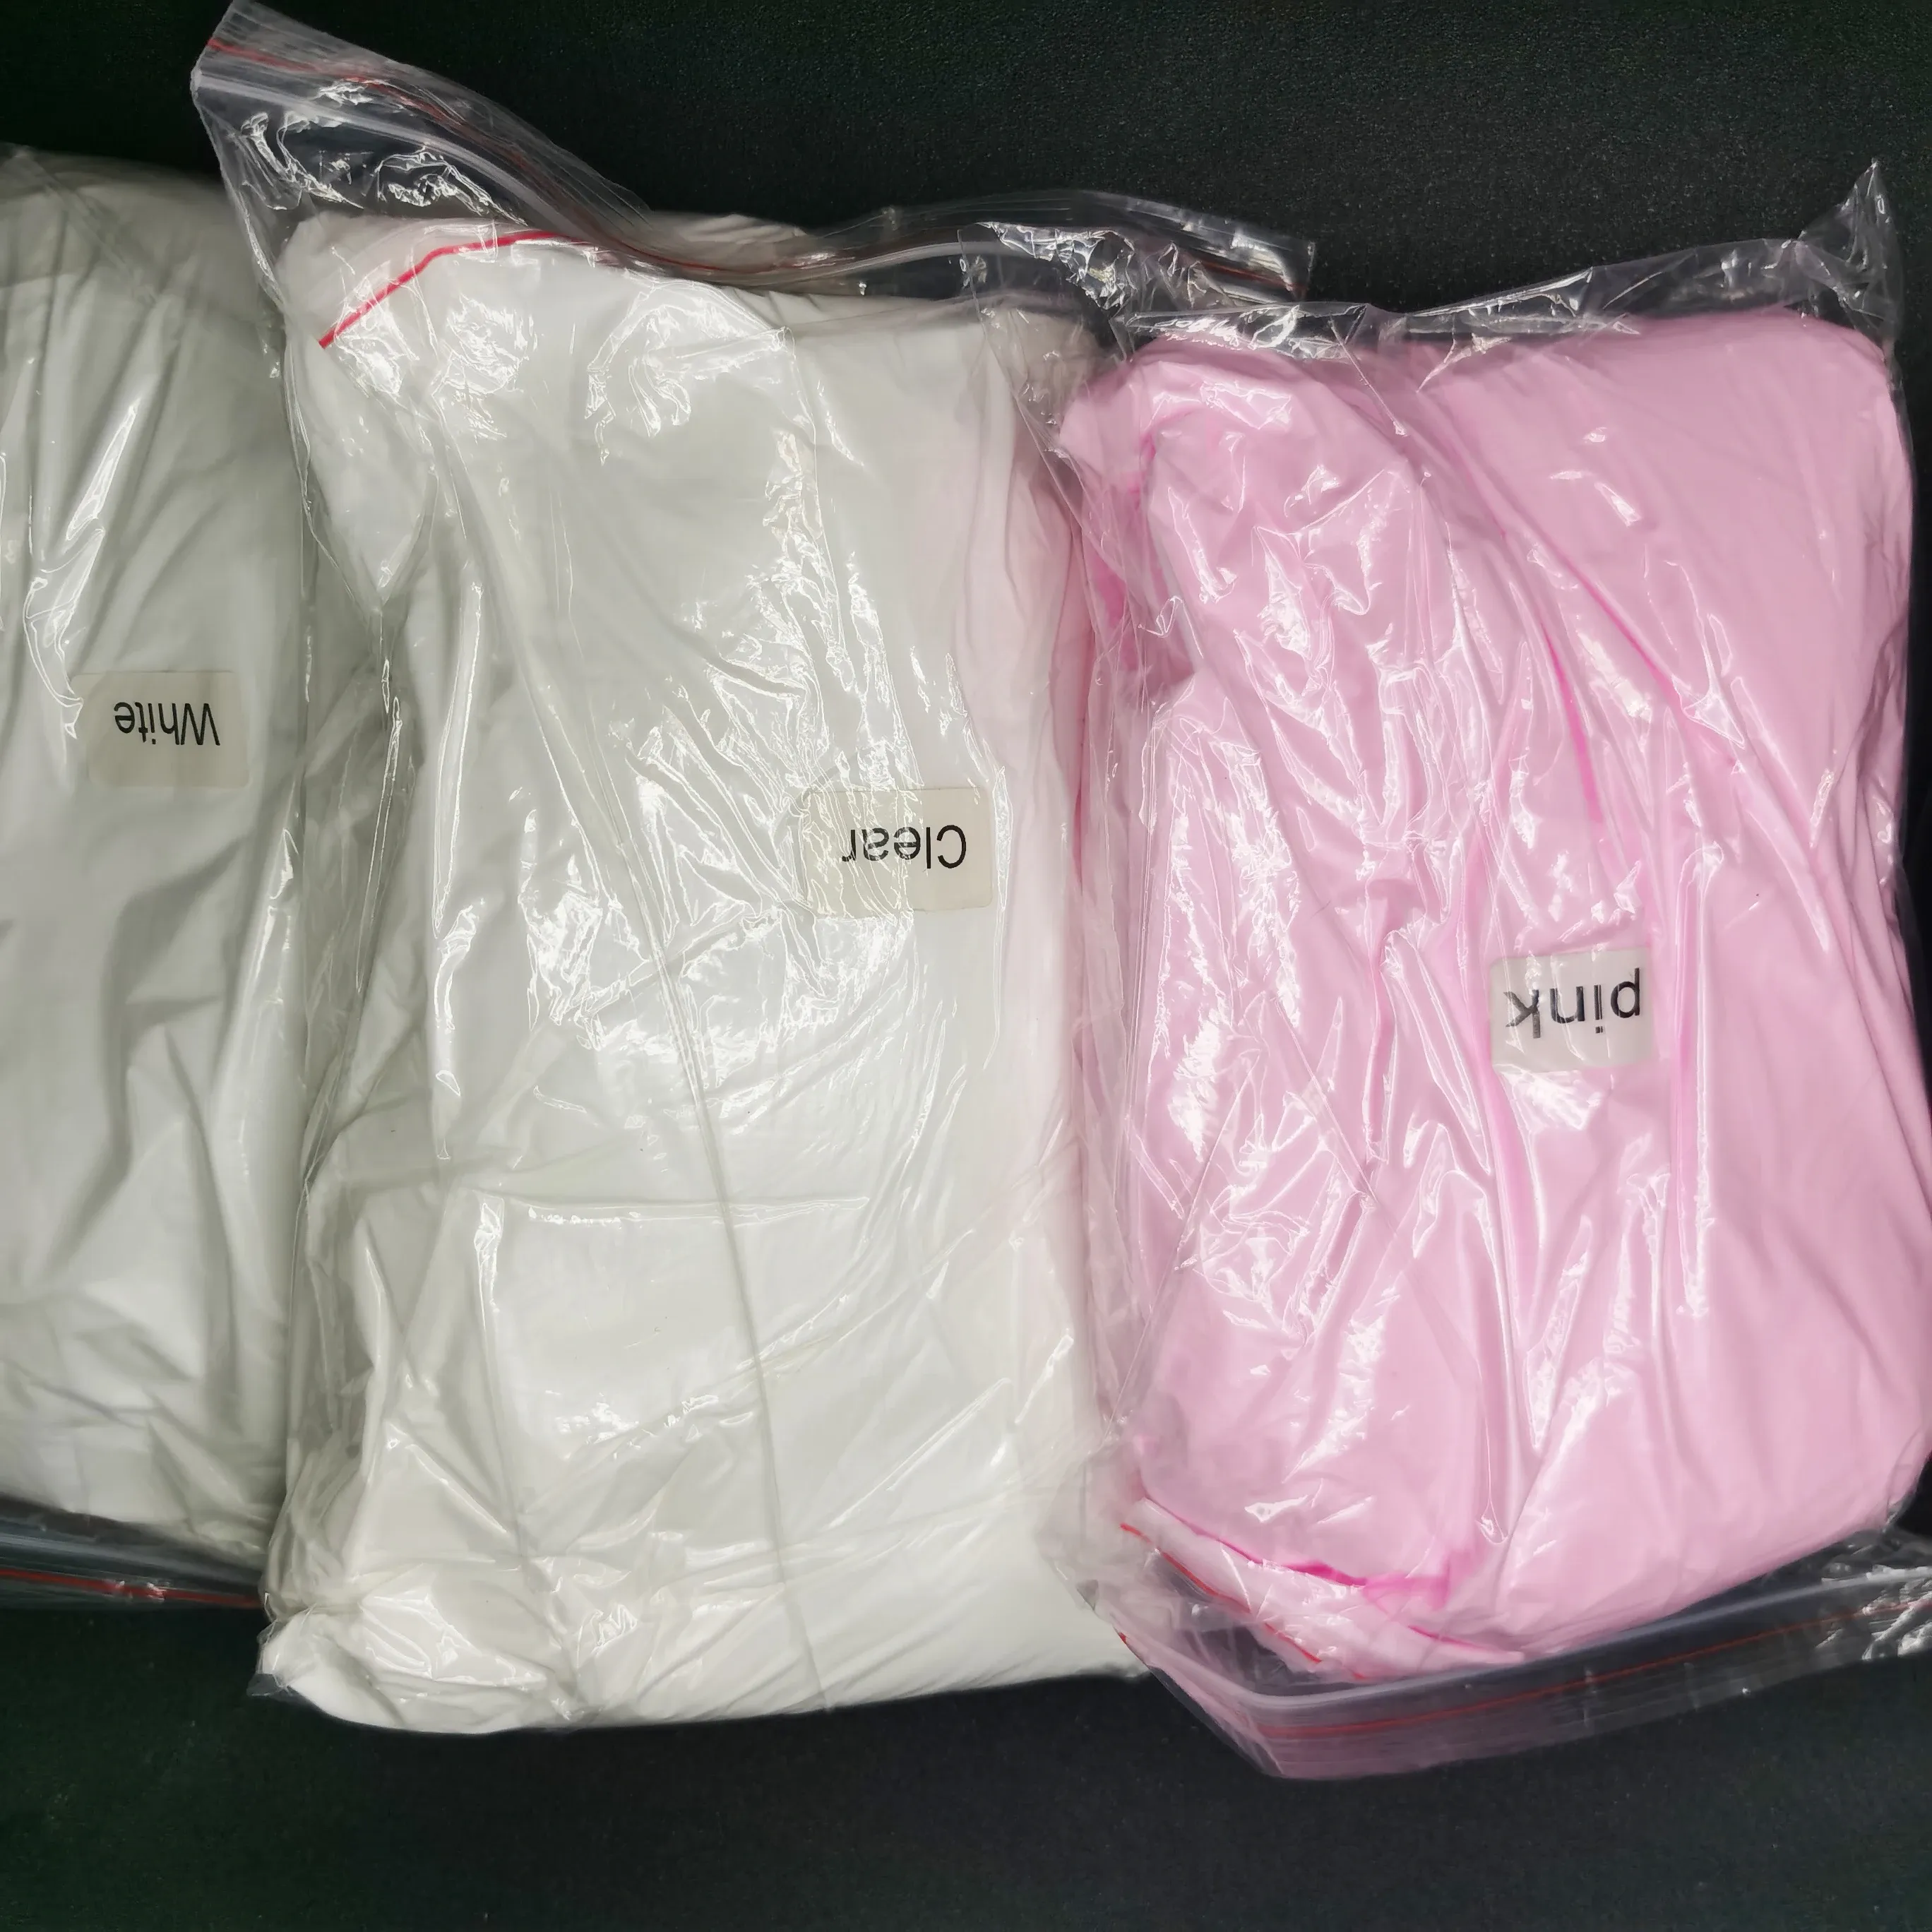 Secadores 500g de imersão de acrílico em pó de unha Extensão sólida de polímero profissional escultura branca branca rosa unhas de pó de pó pigmento